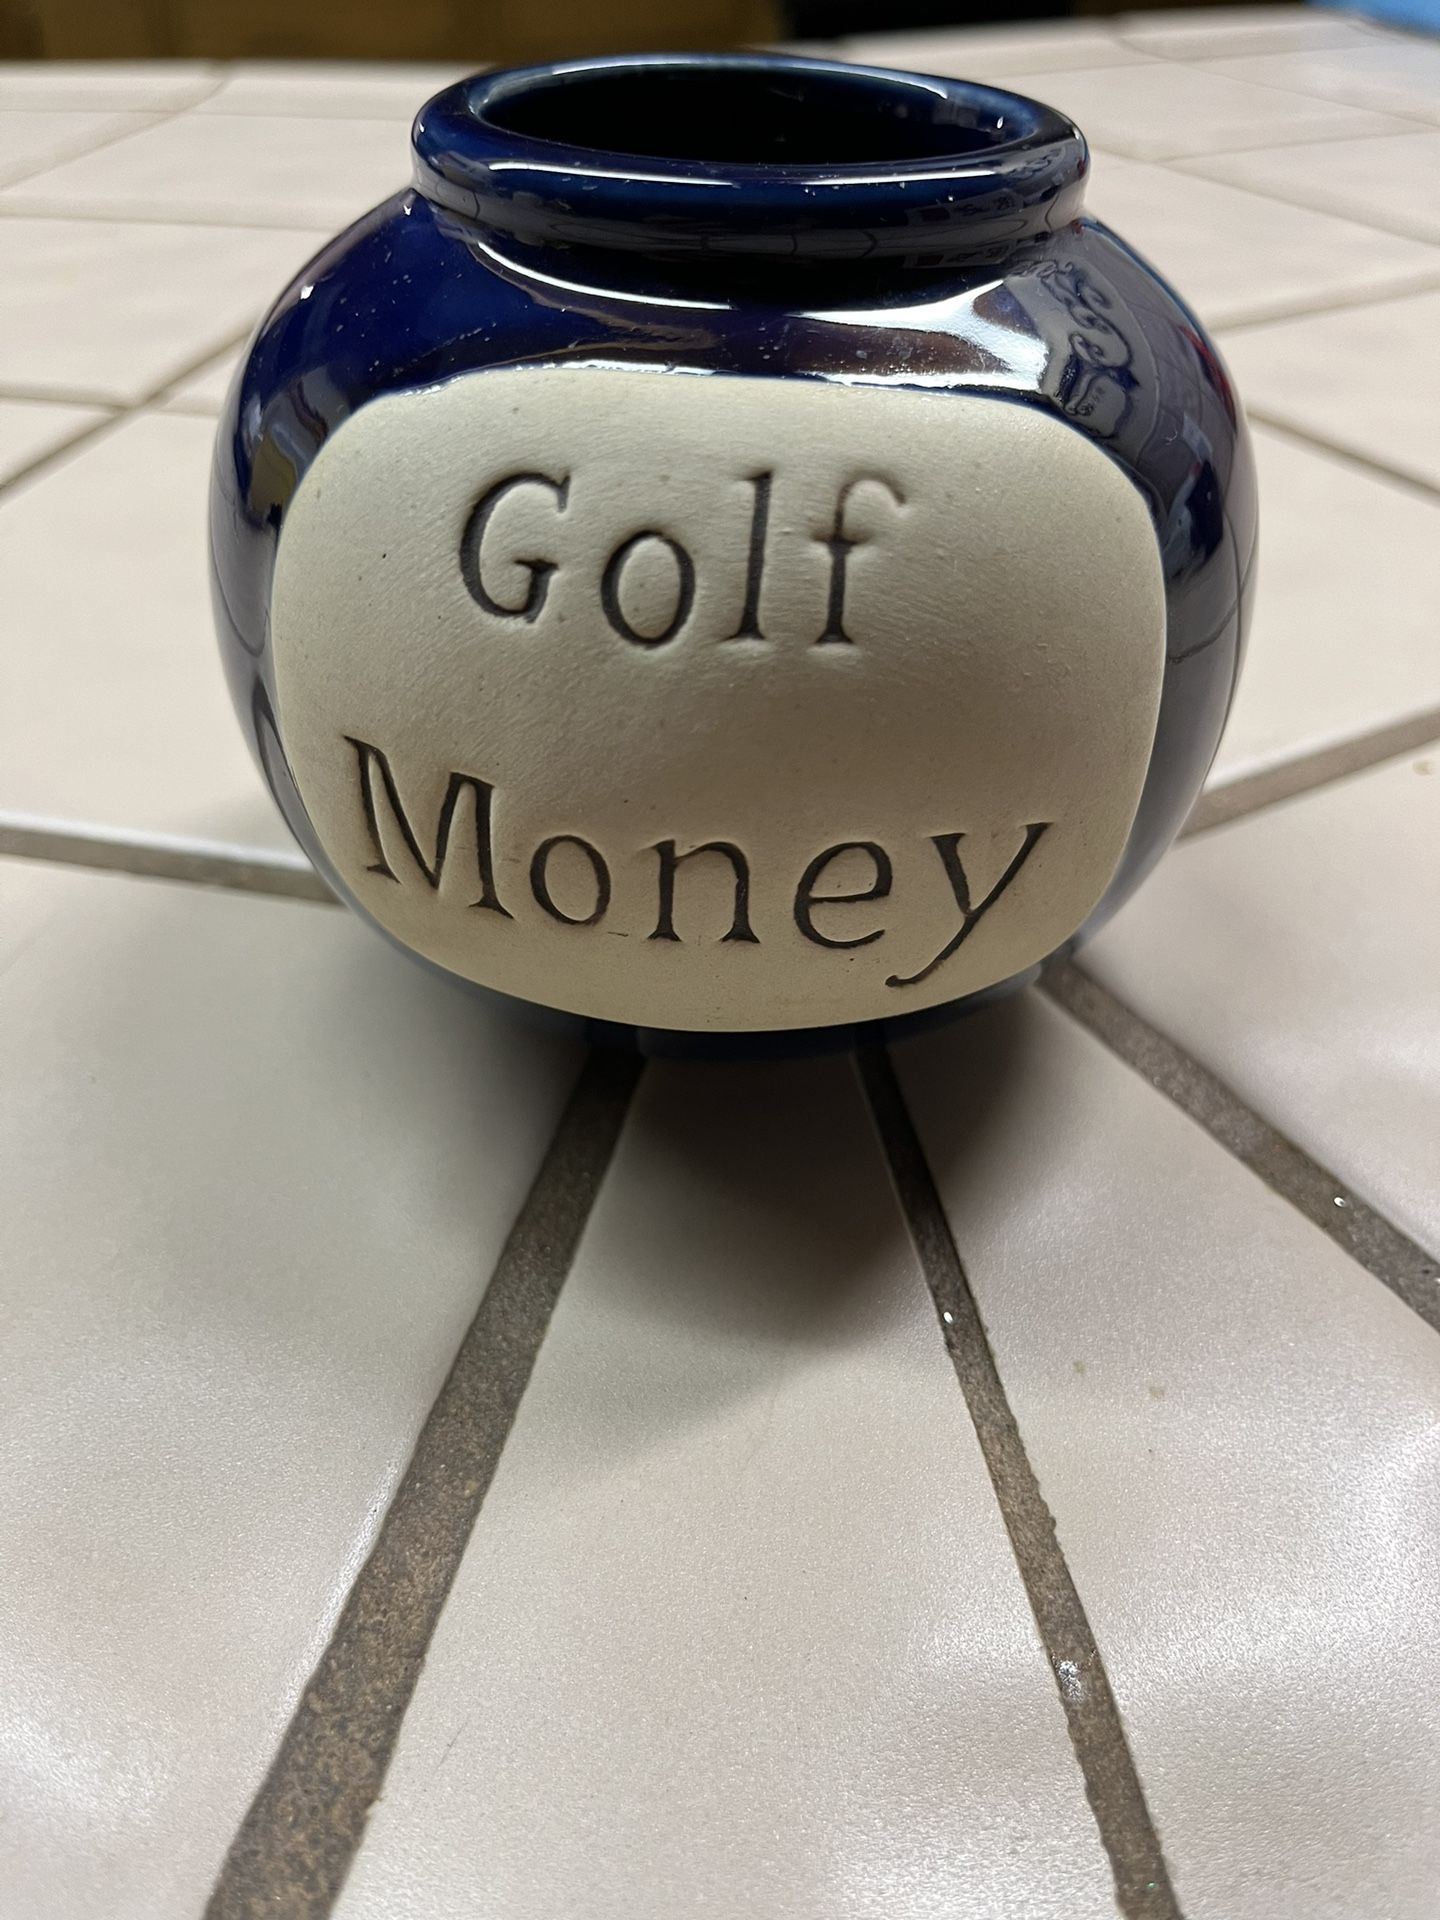 Golf Money Ceramic Money Container 